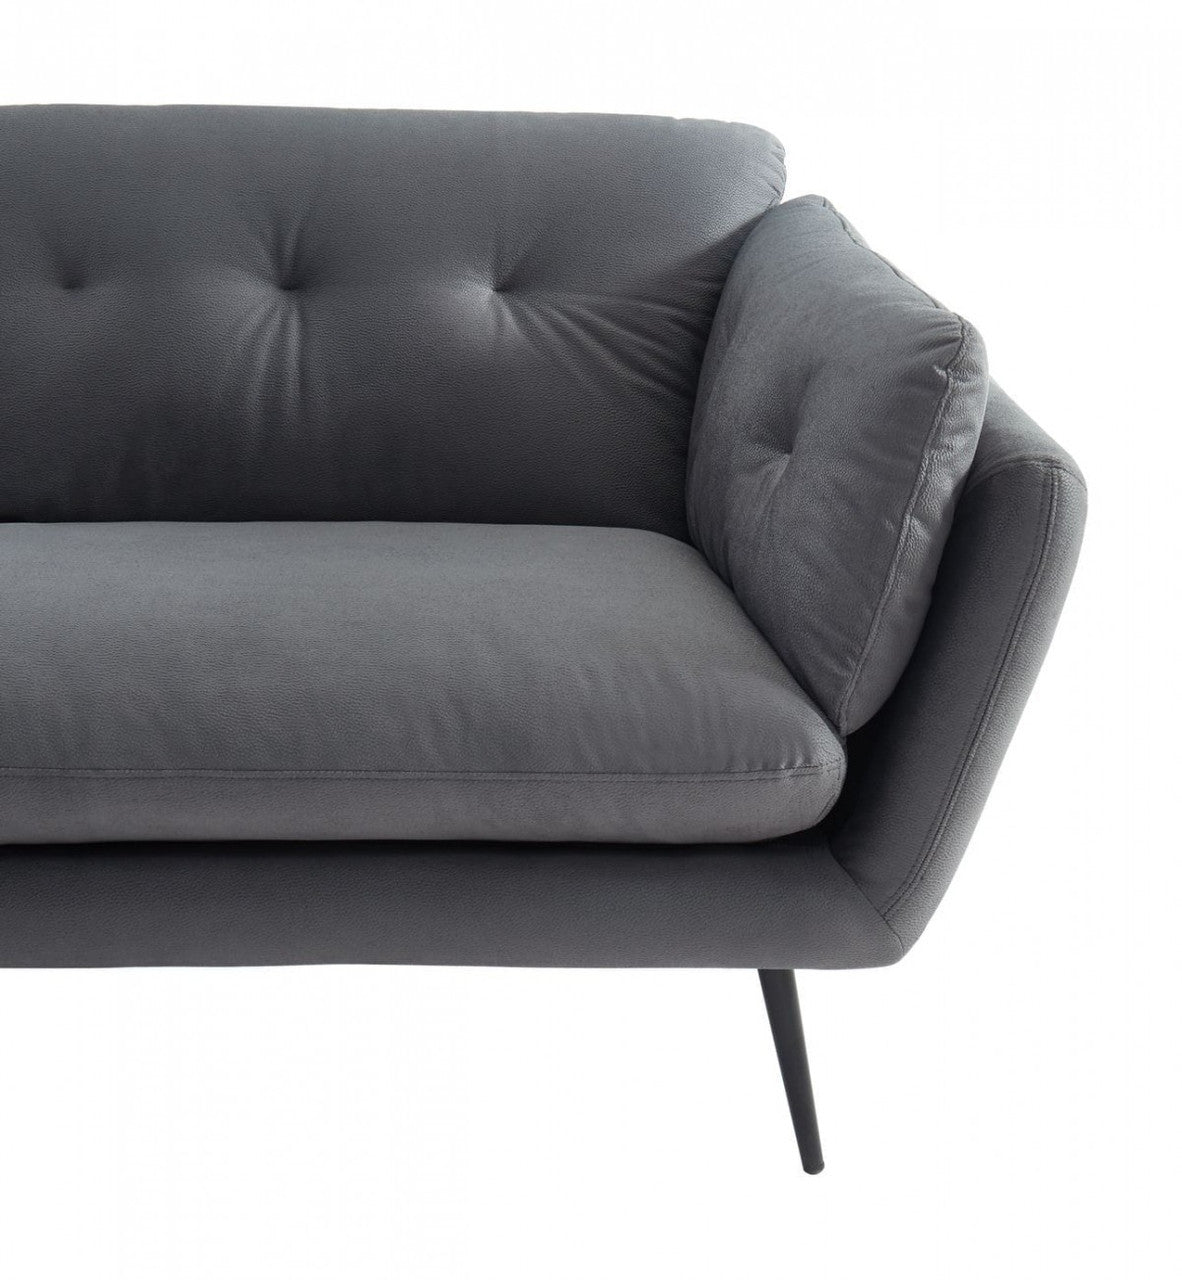 Divani Casa Cody Modern Grey Fabric Sofa